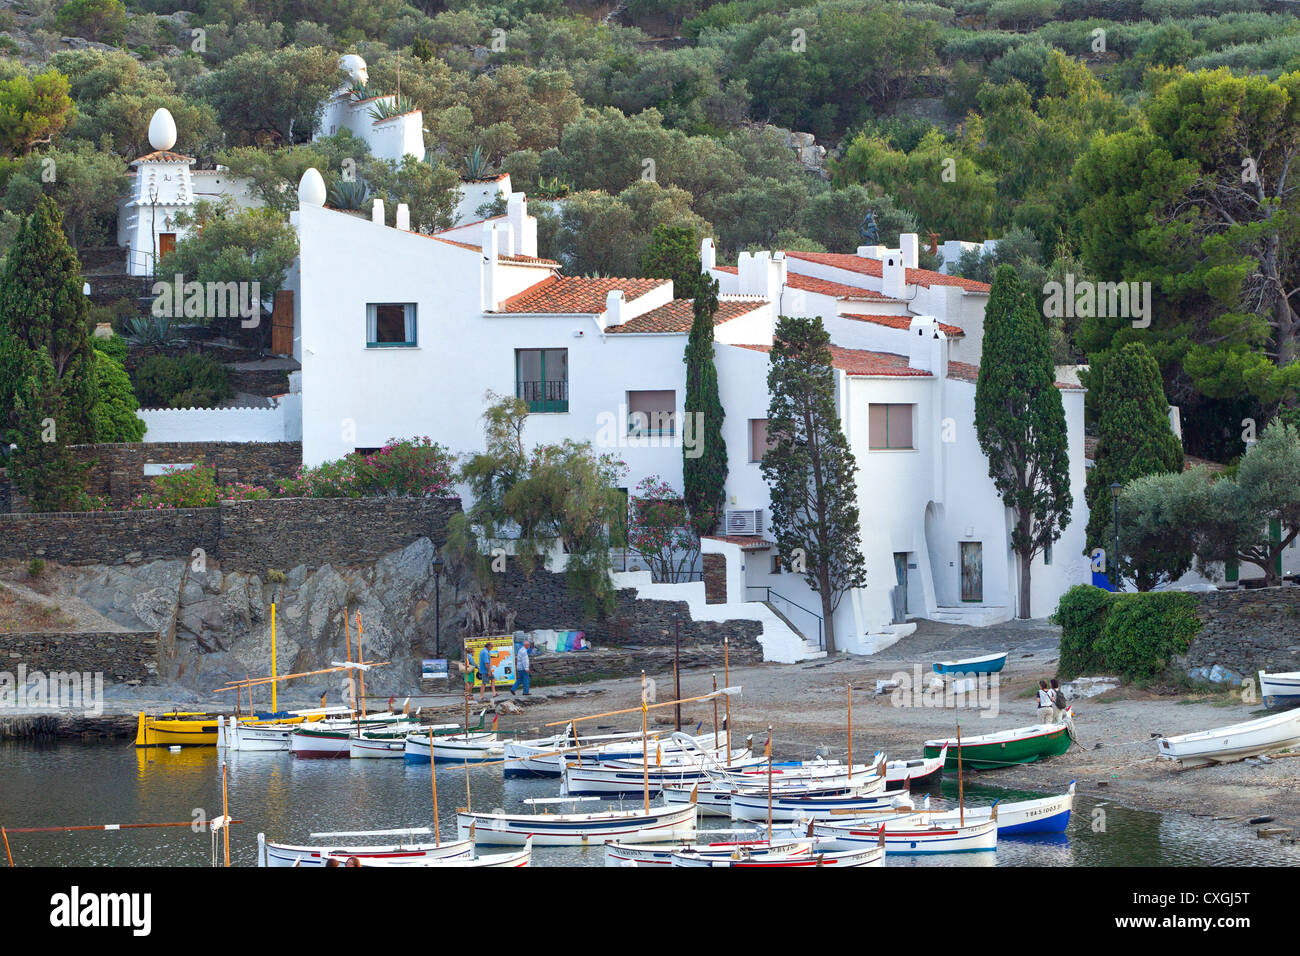 Maison musée de Salvador Dali à Port Lligat, Cadaques, Espagne Photo Stock  - Alamy